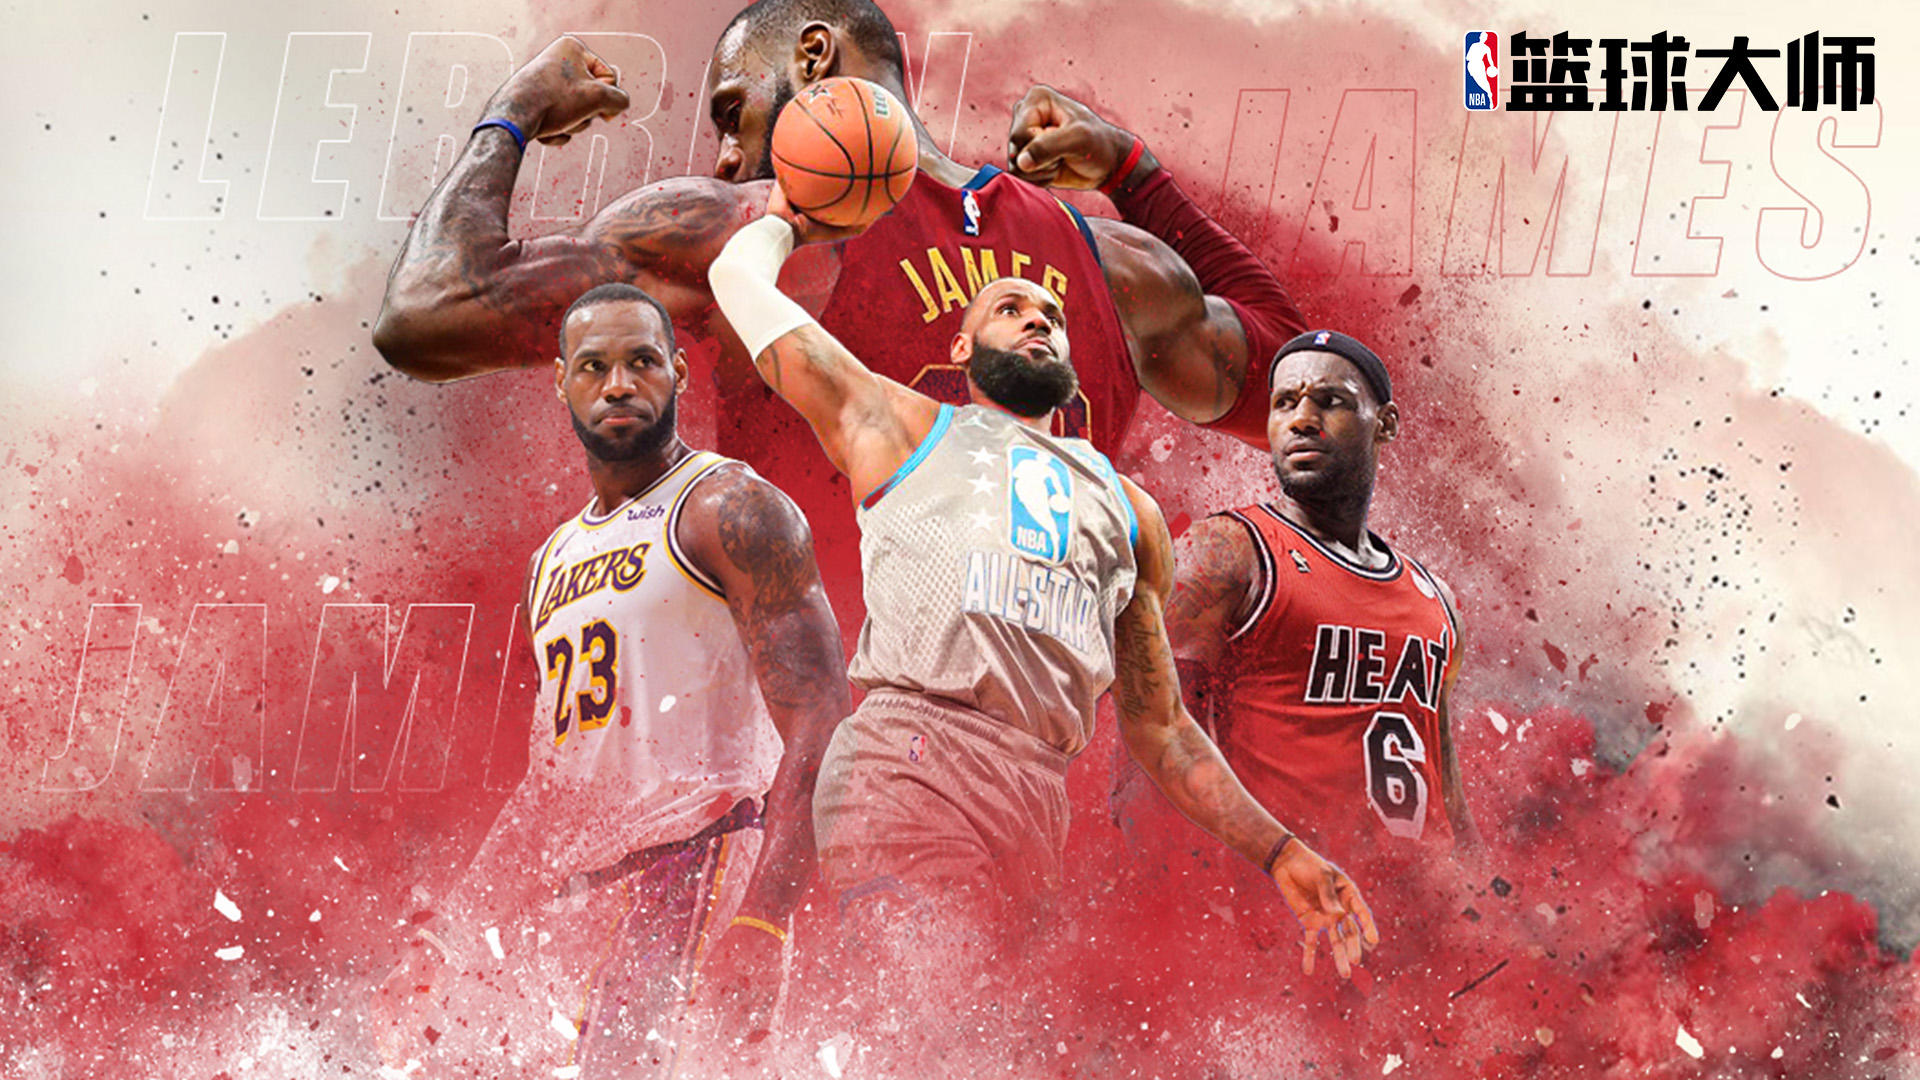 Banner of Maîtres de basket de la NBA 